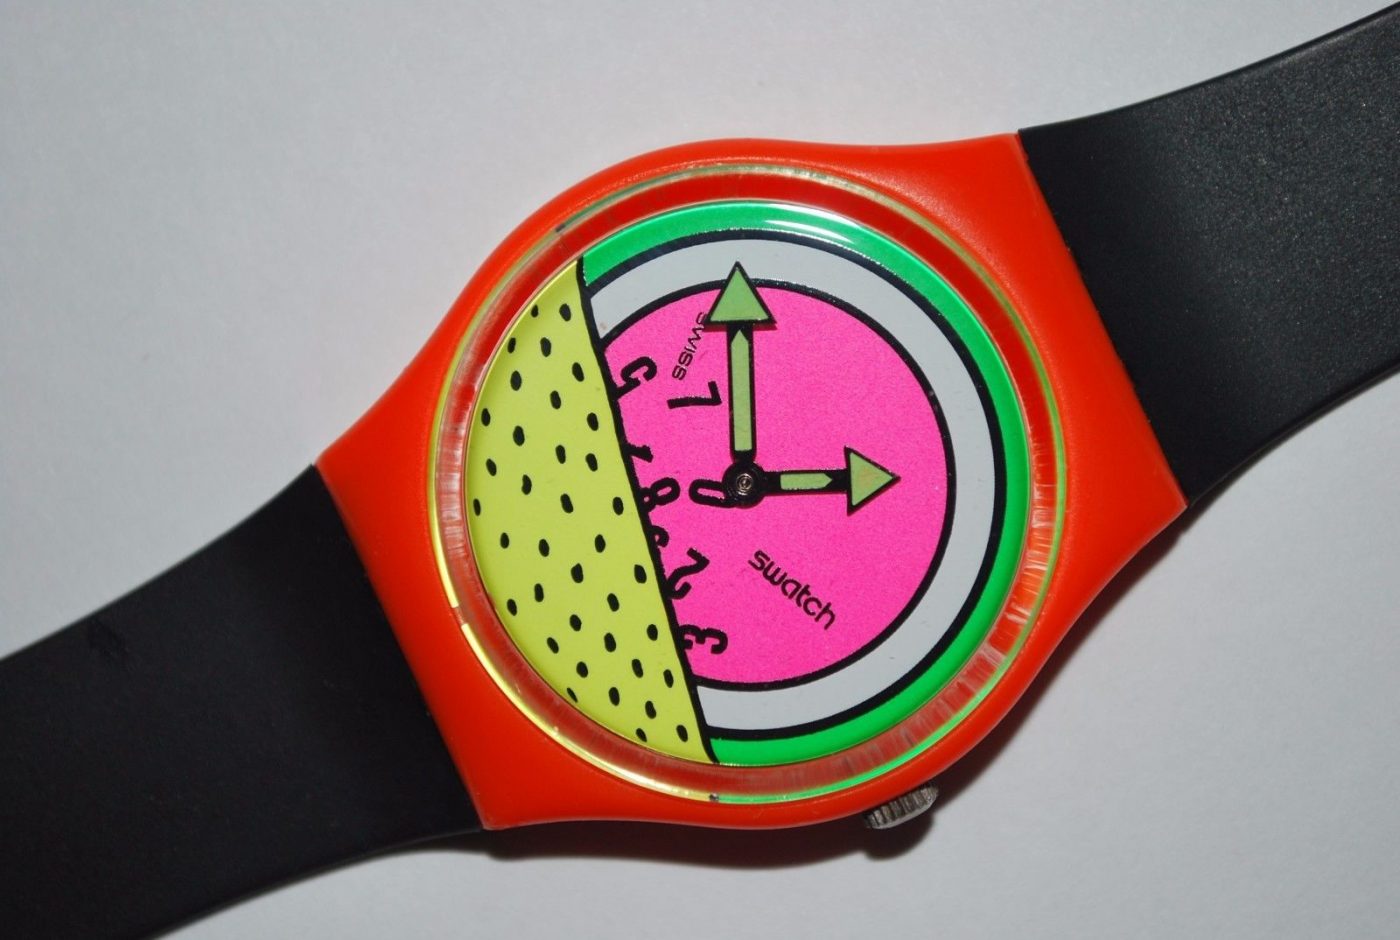 Un modèle de Montre Swatch dessiné par Keith Haring en 1985 